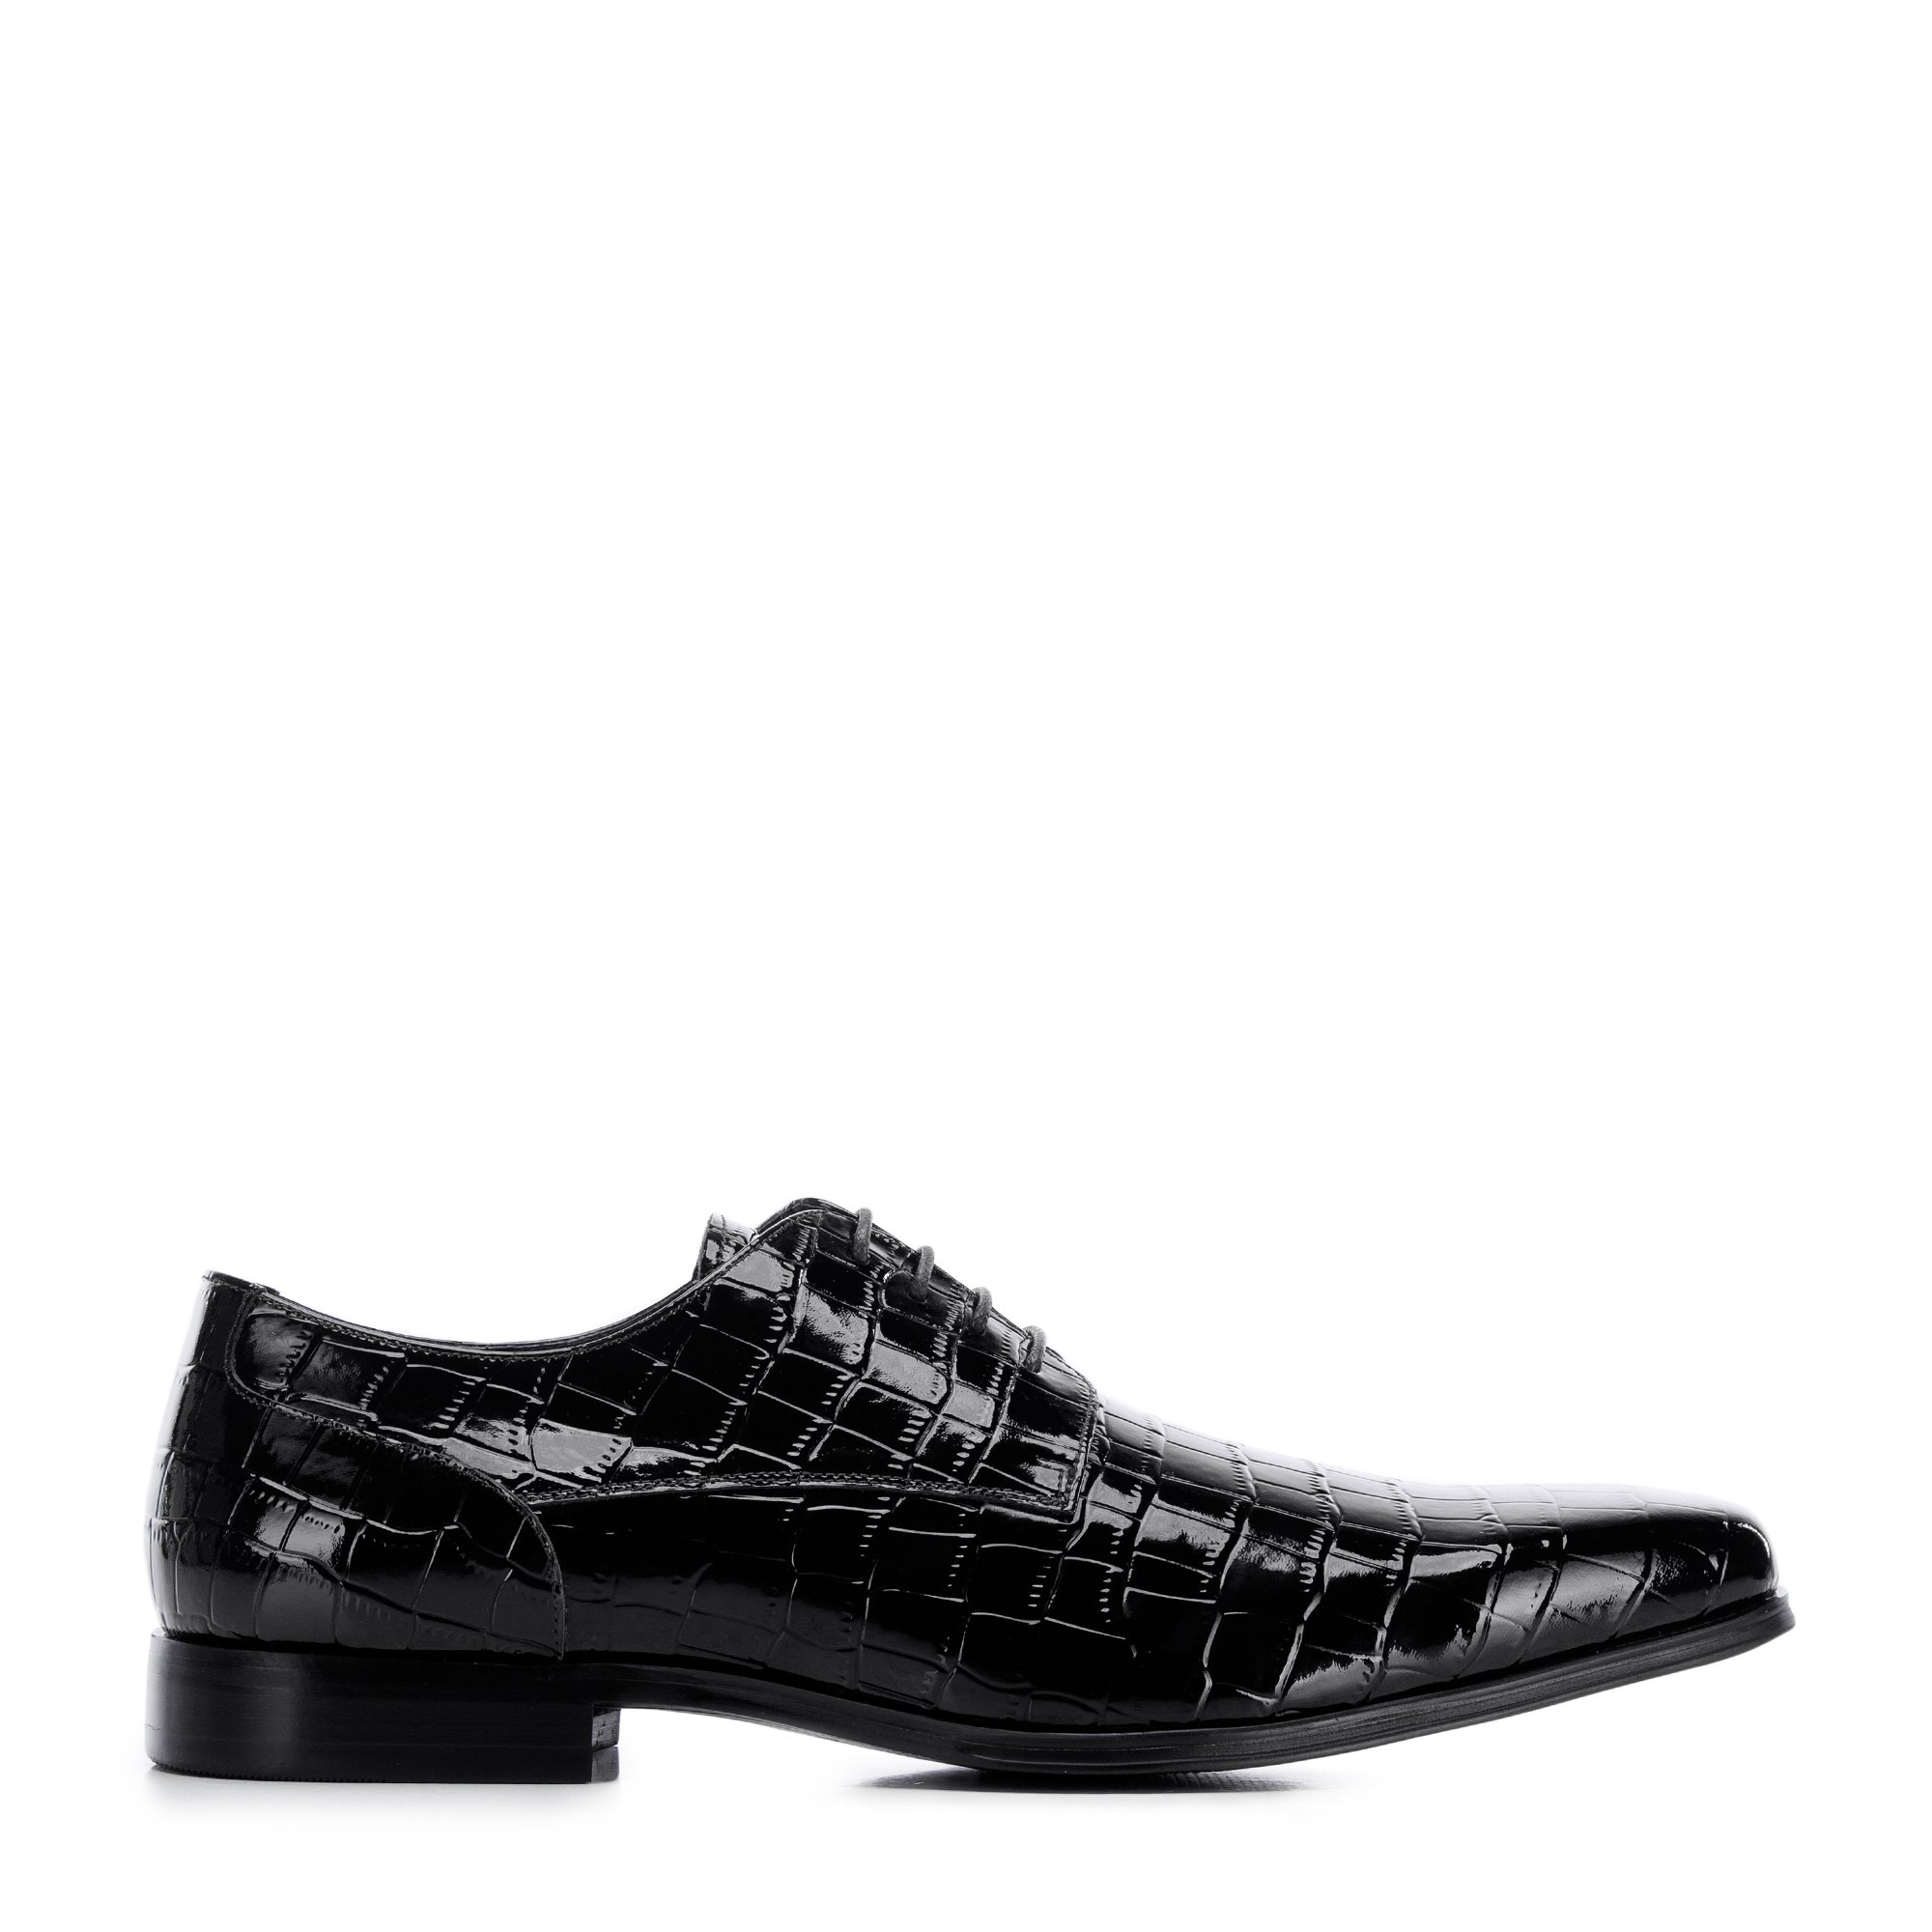 E-shop Pánske derby topánky vyrobené z lakovanej kože s kroko textúrou 96-M-519-1C